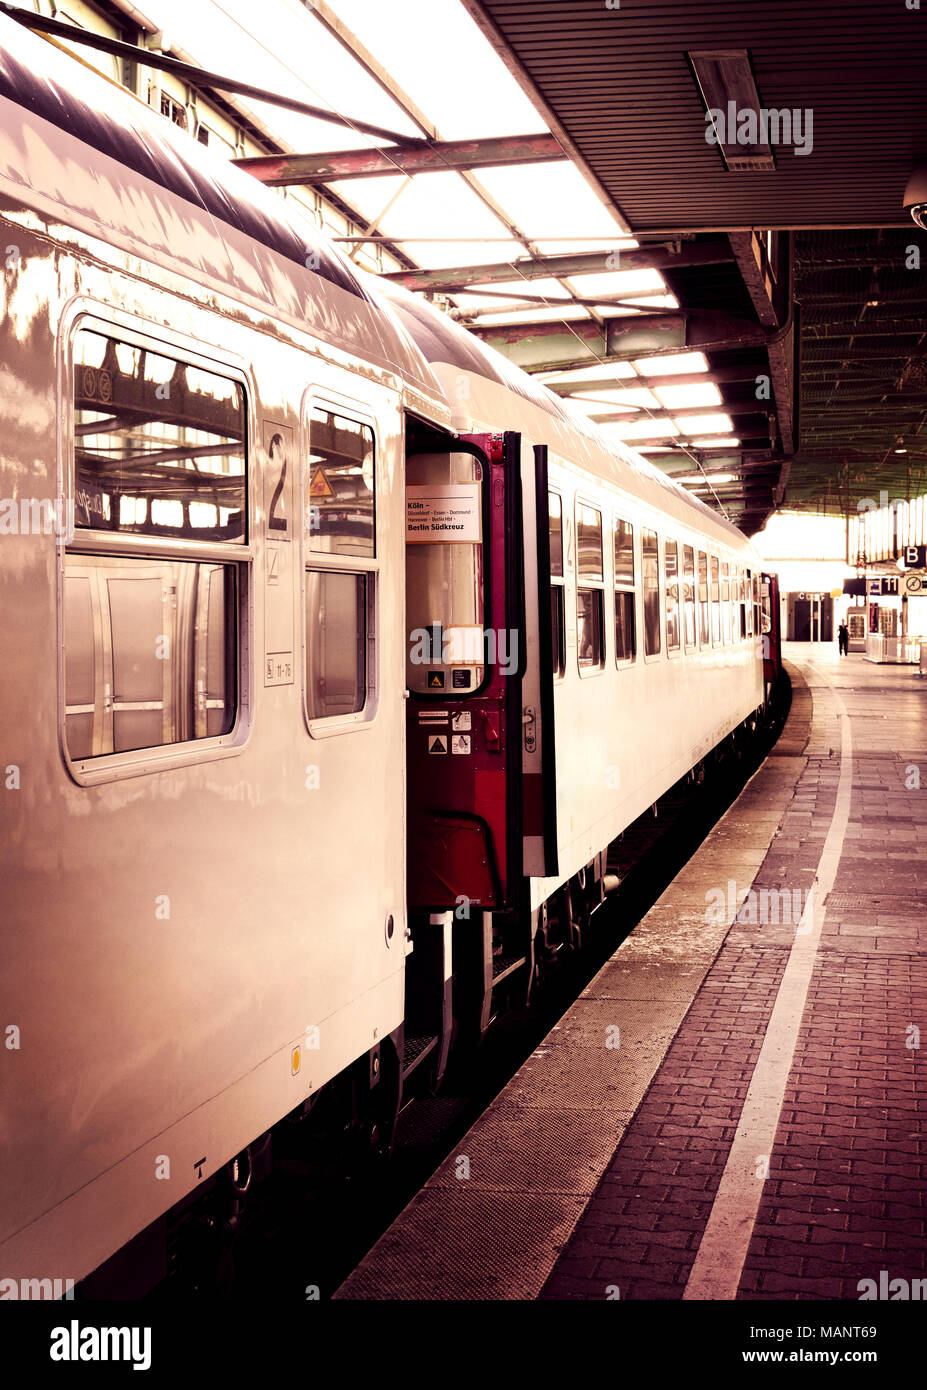 Alte Zug in einen Bahnhof mit offenen Türen. Sepia getonten Bild. Stockfoto